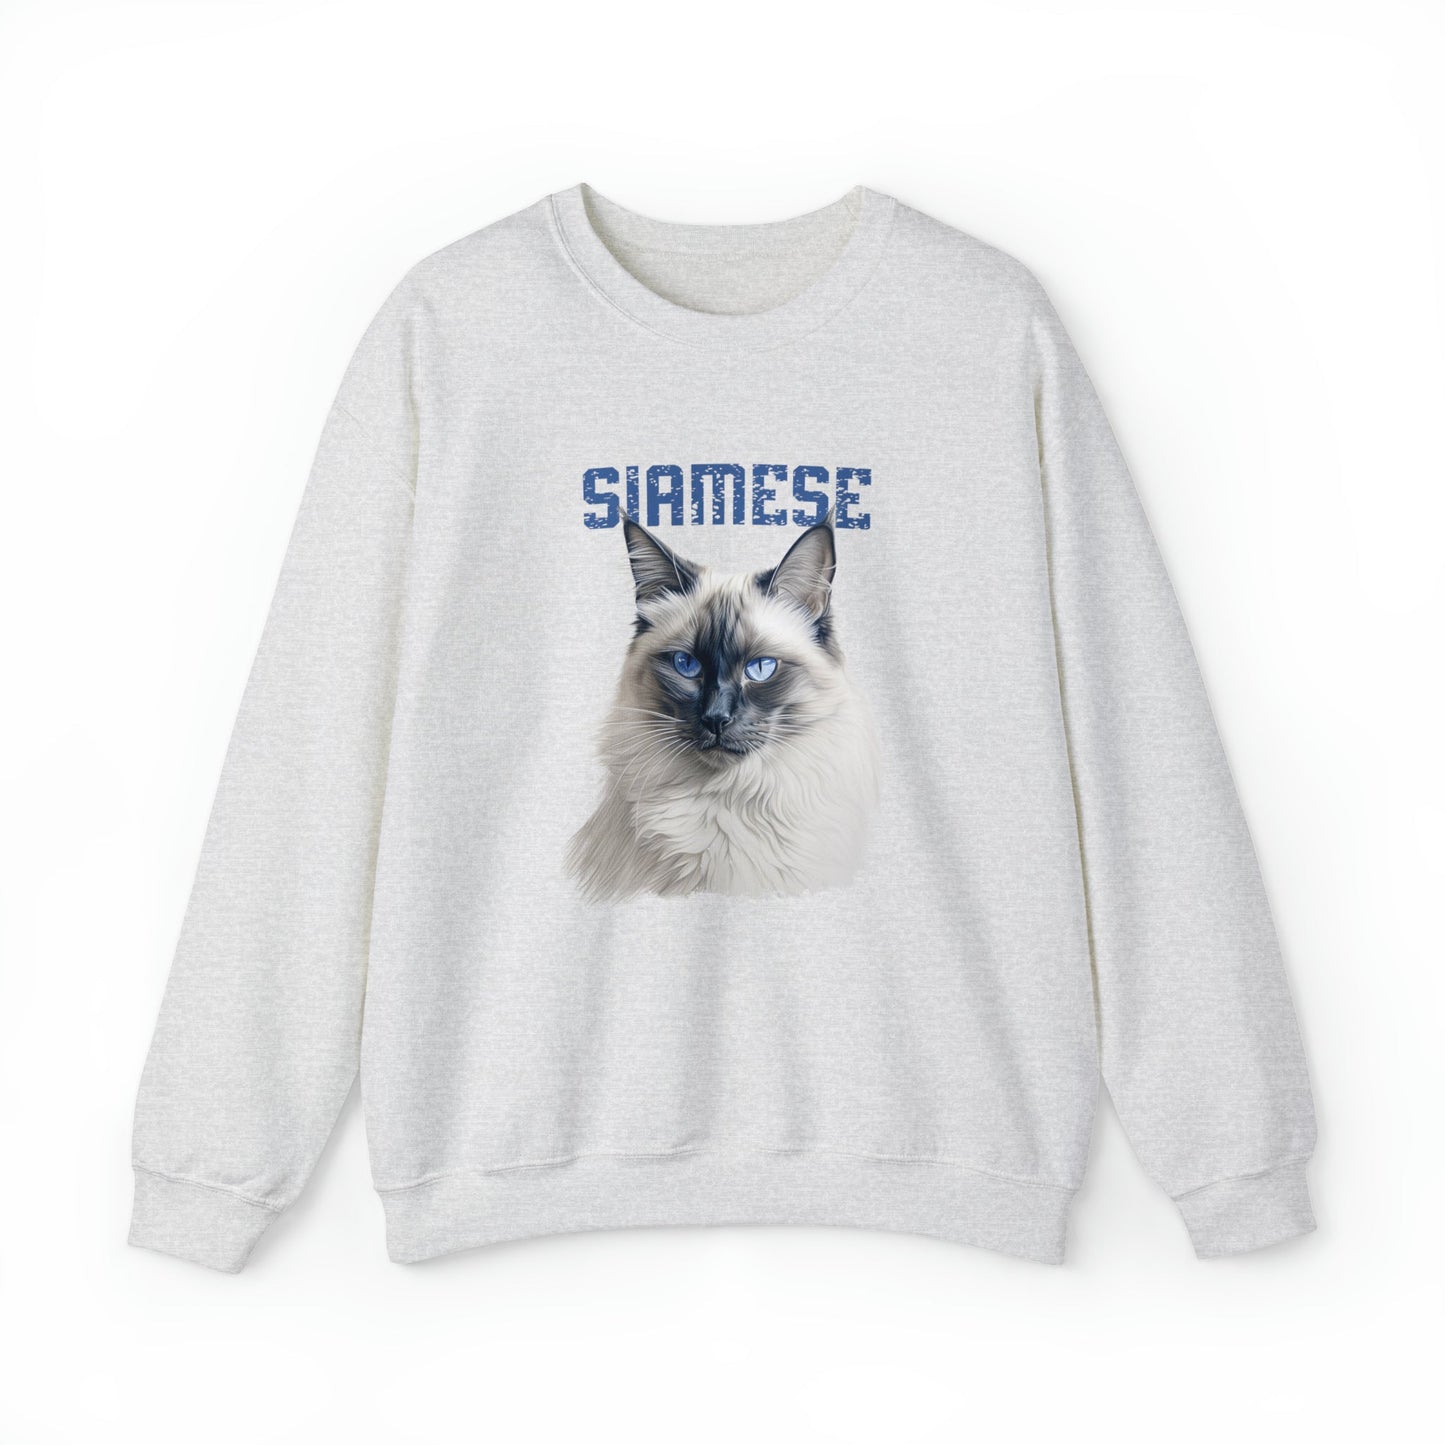 Siamese Cat Mom Sweatshirt, Siamese Cat Shirt, Purrfect Cat Gift Mom, Lovely Gray Cat - FlooredByArt